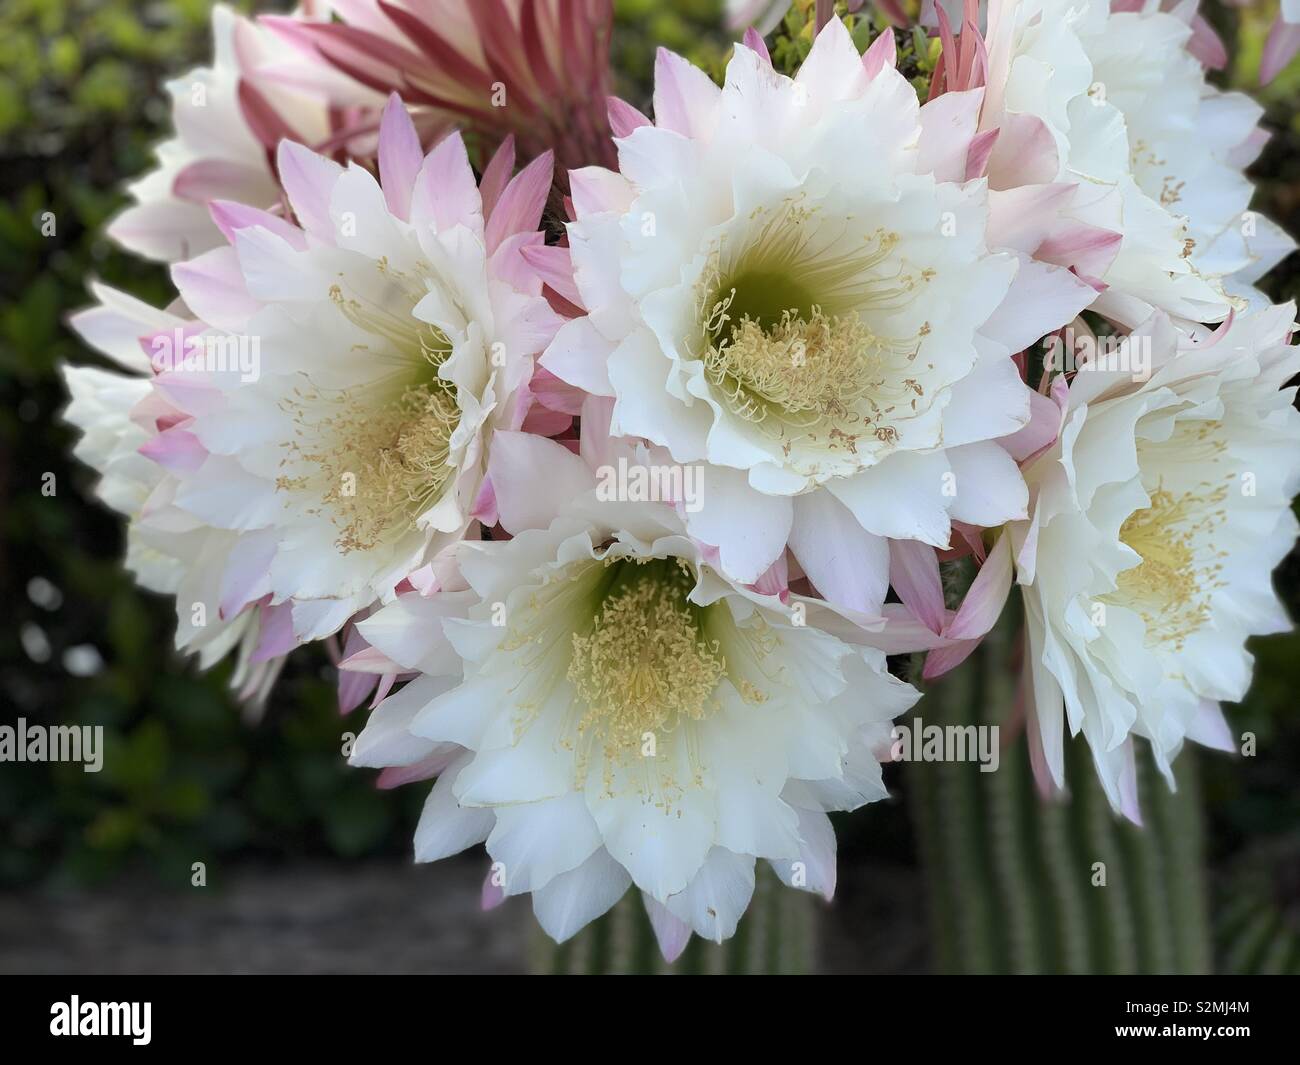 Cactus flowers Stock Photo